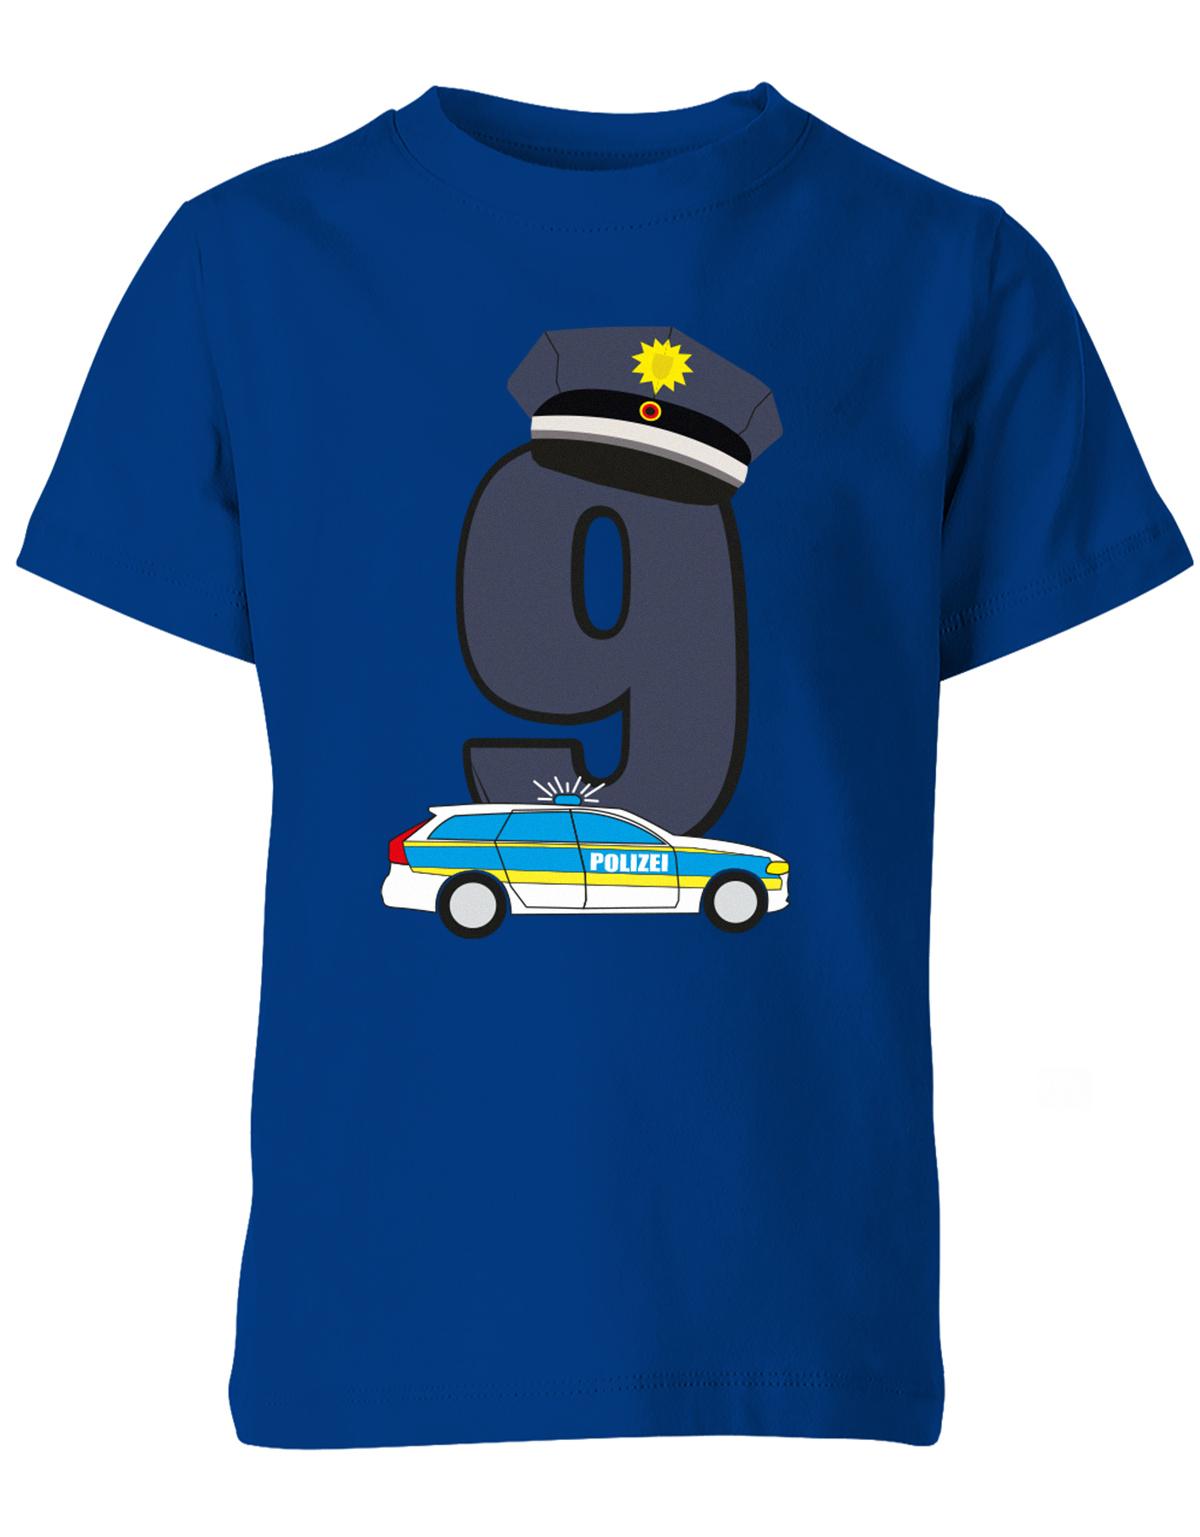 ich-bin-9-polizei-geburtstag-kinder-shirt-royalblau